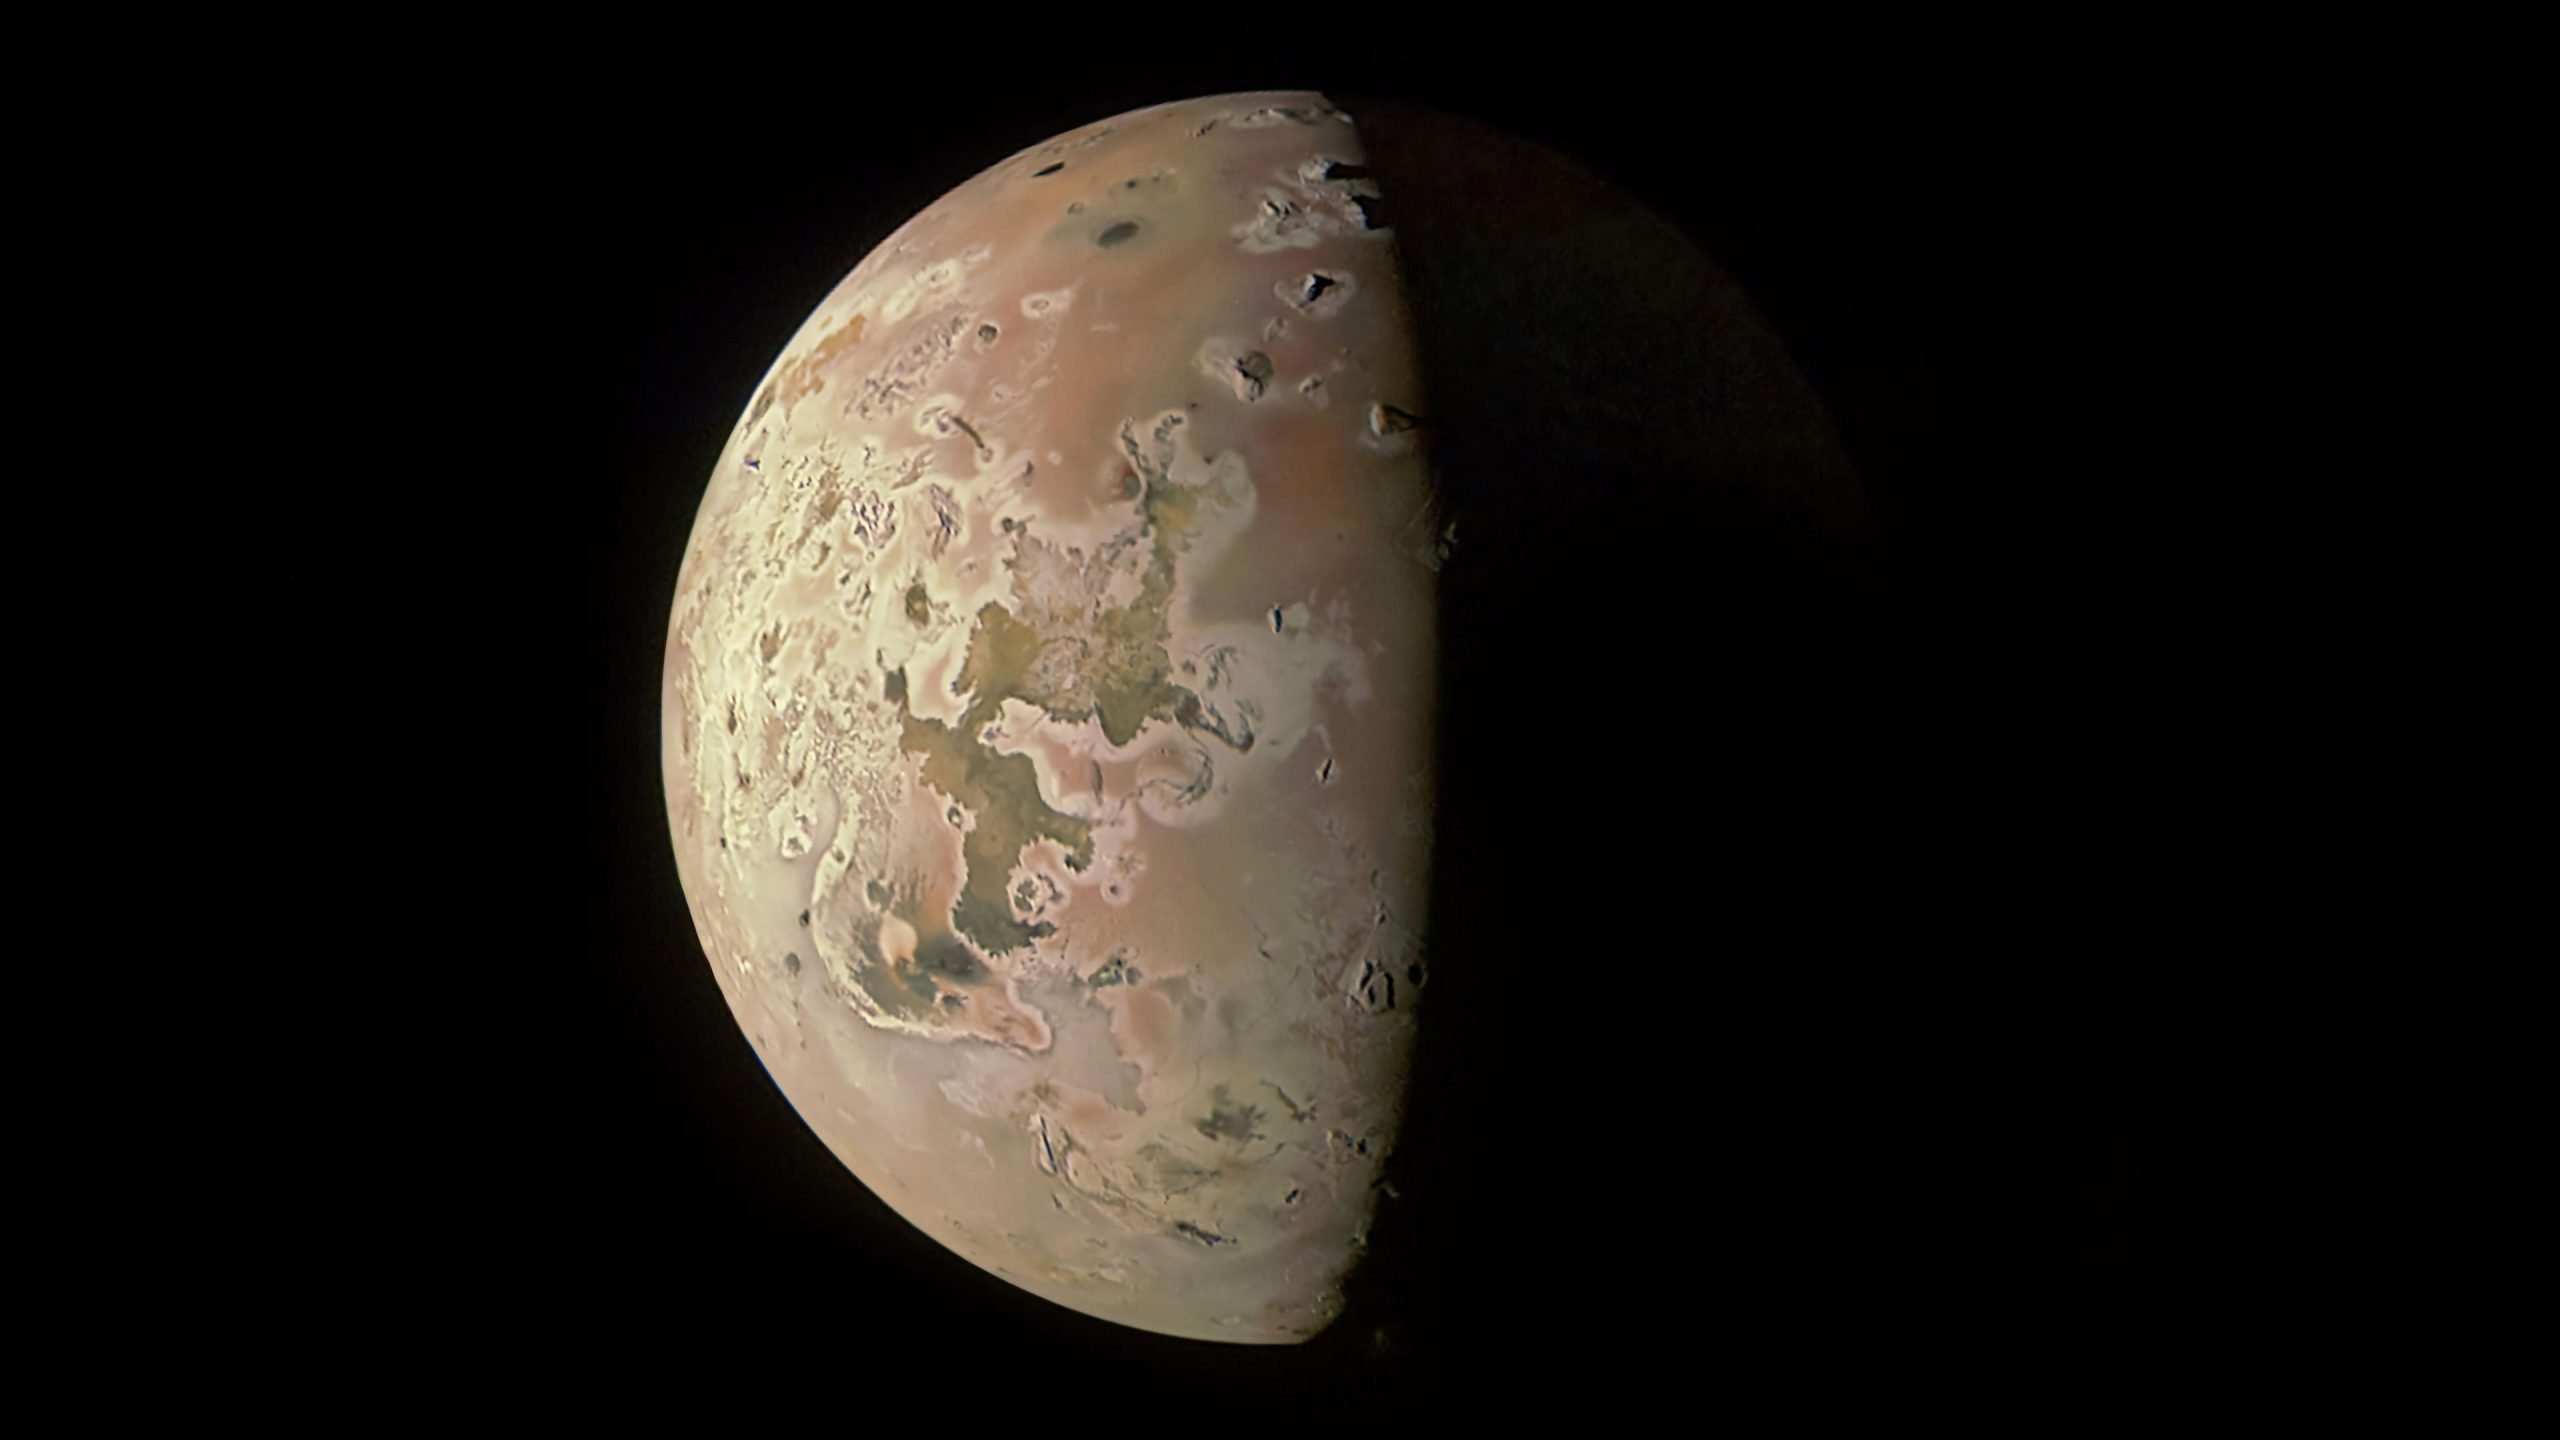 Revealing the secrets of Jupiter's fiery moon Io